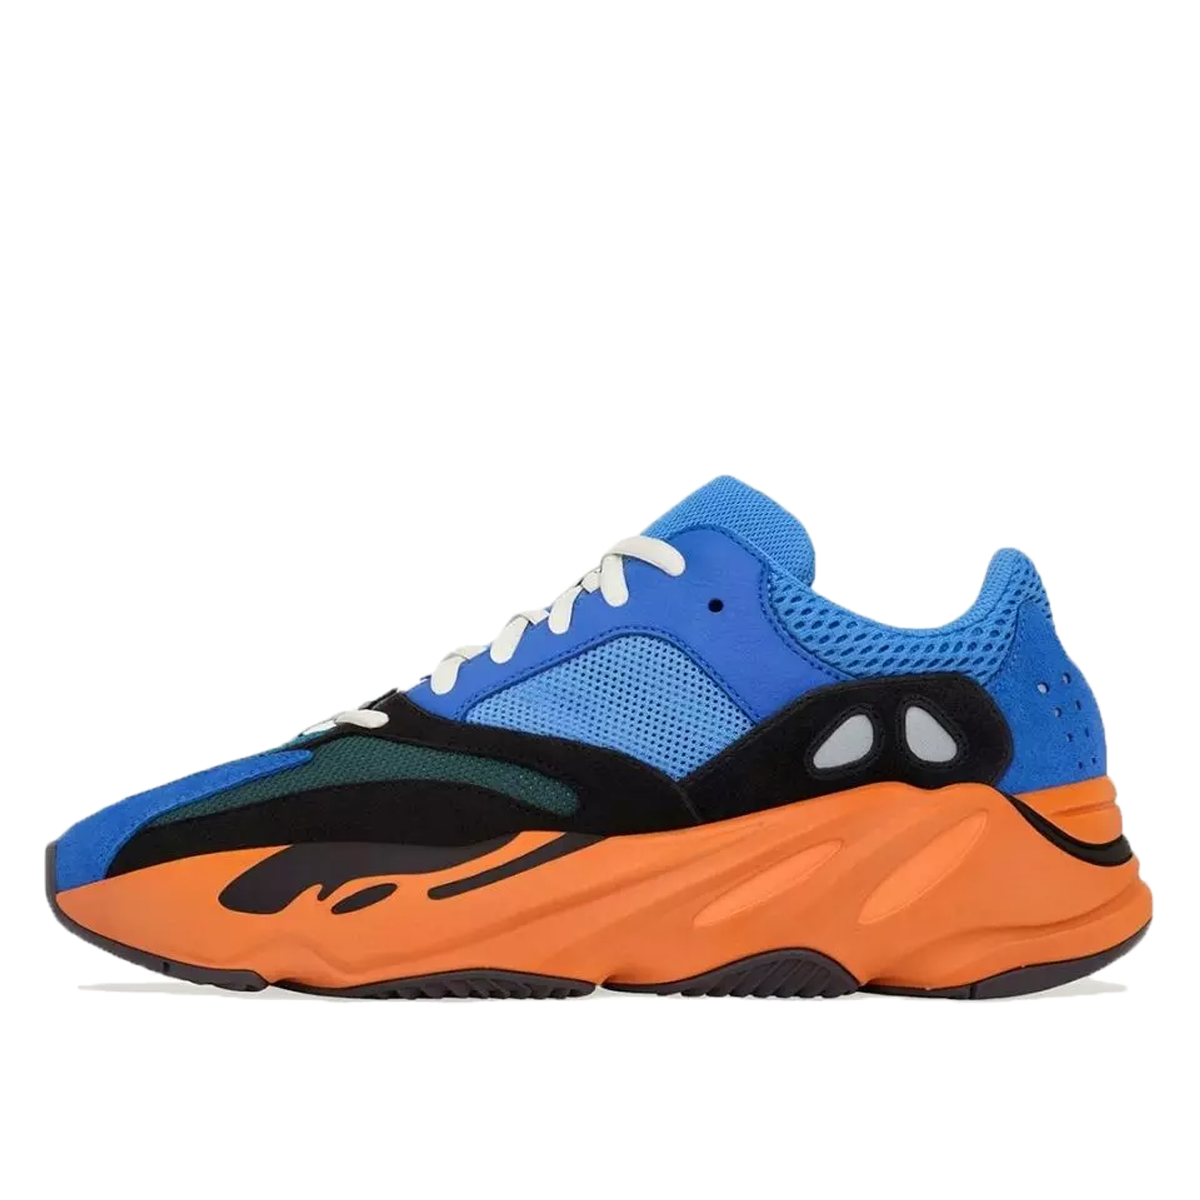 Sneakerek és cipők adidas Yeezy Yeezy Boost 700 "Bright Blue" Kék | GZ0541, 1